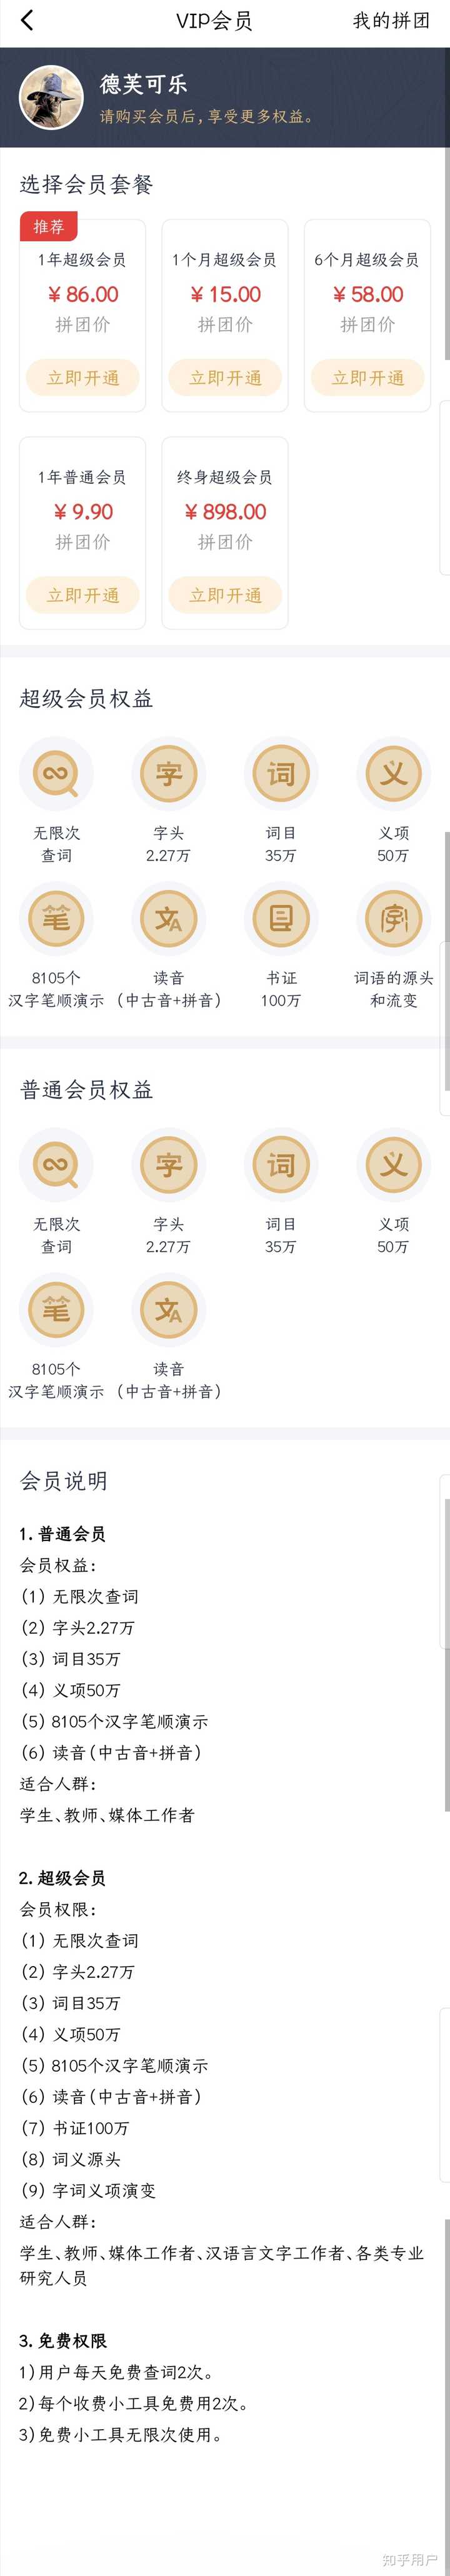 有哪些汉语词典类app值得推荐 知乎